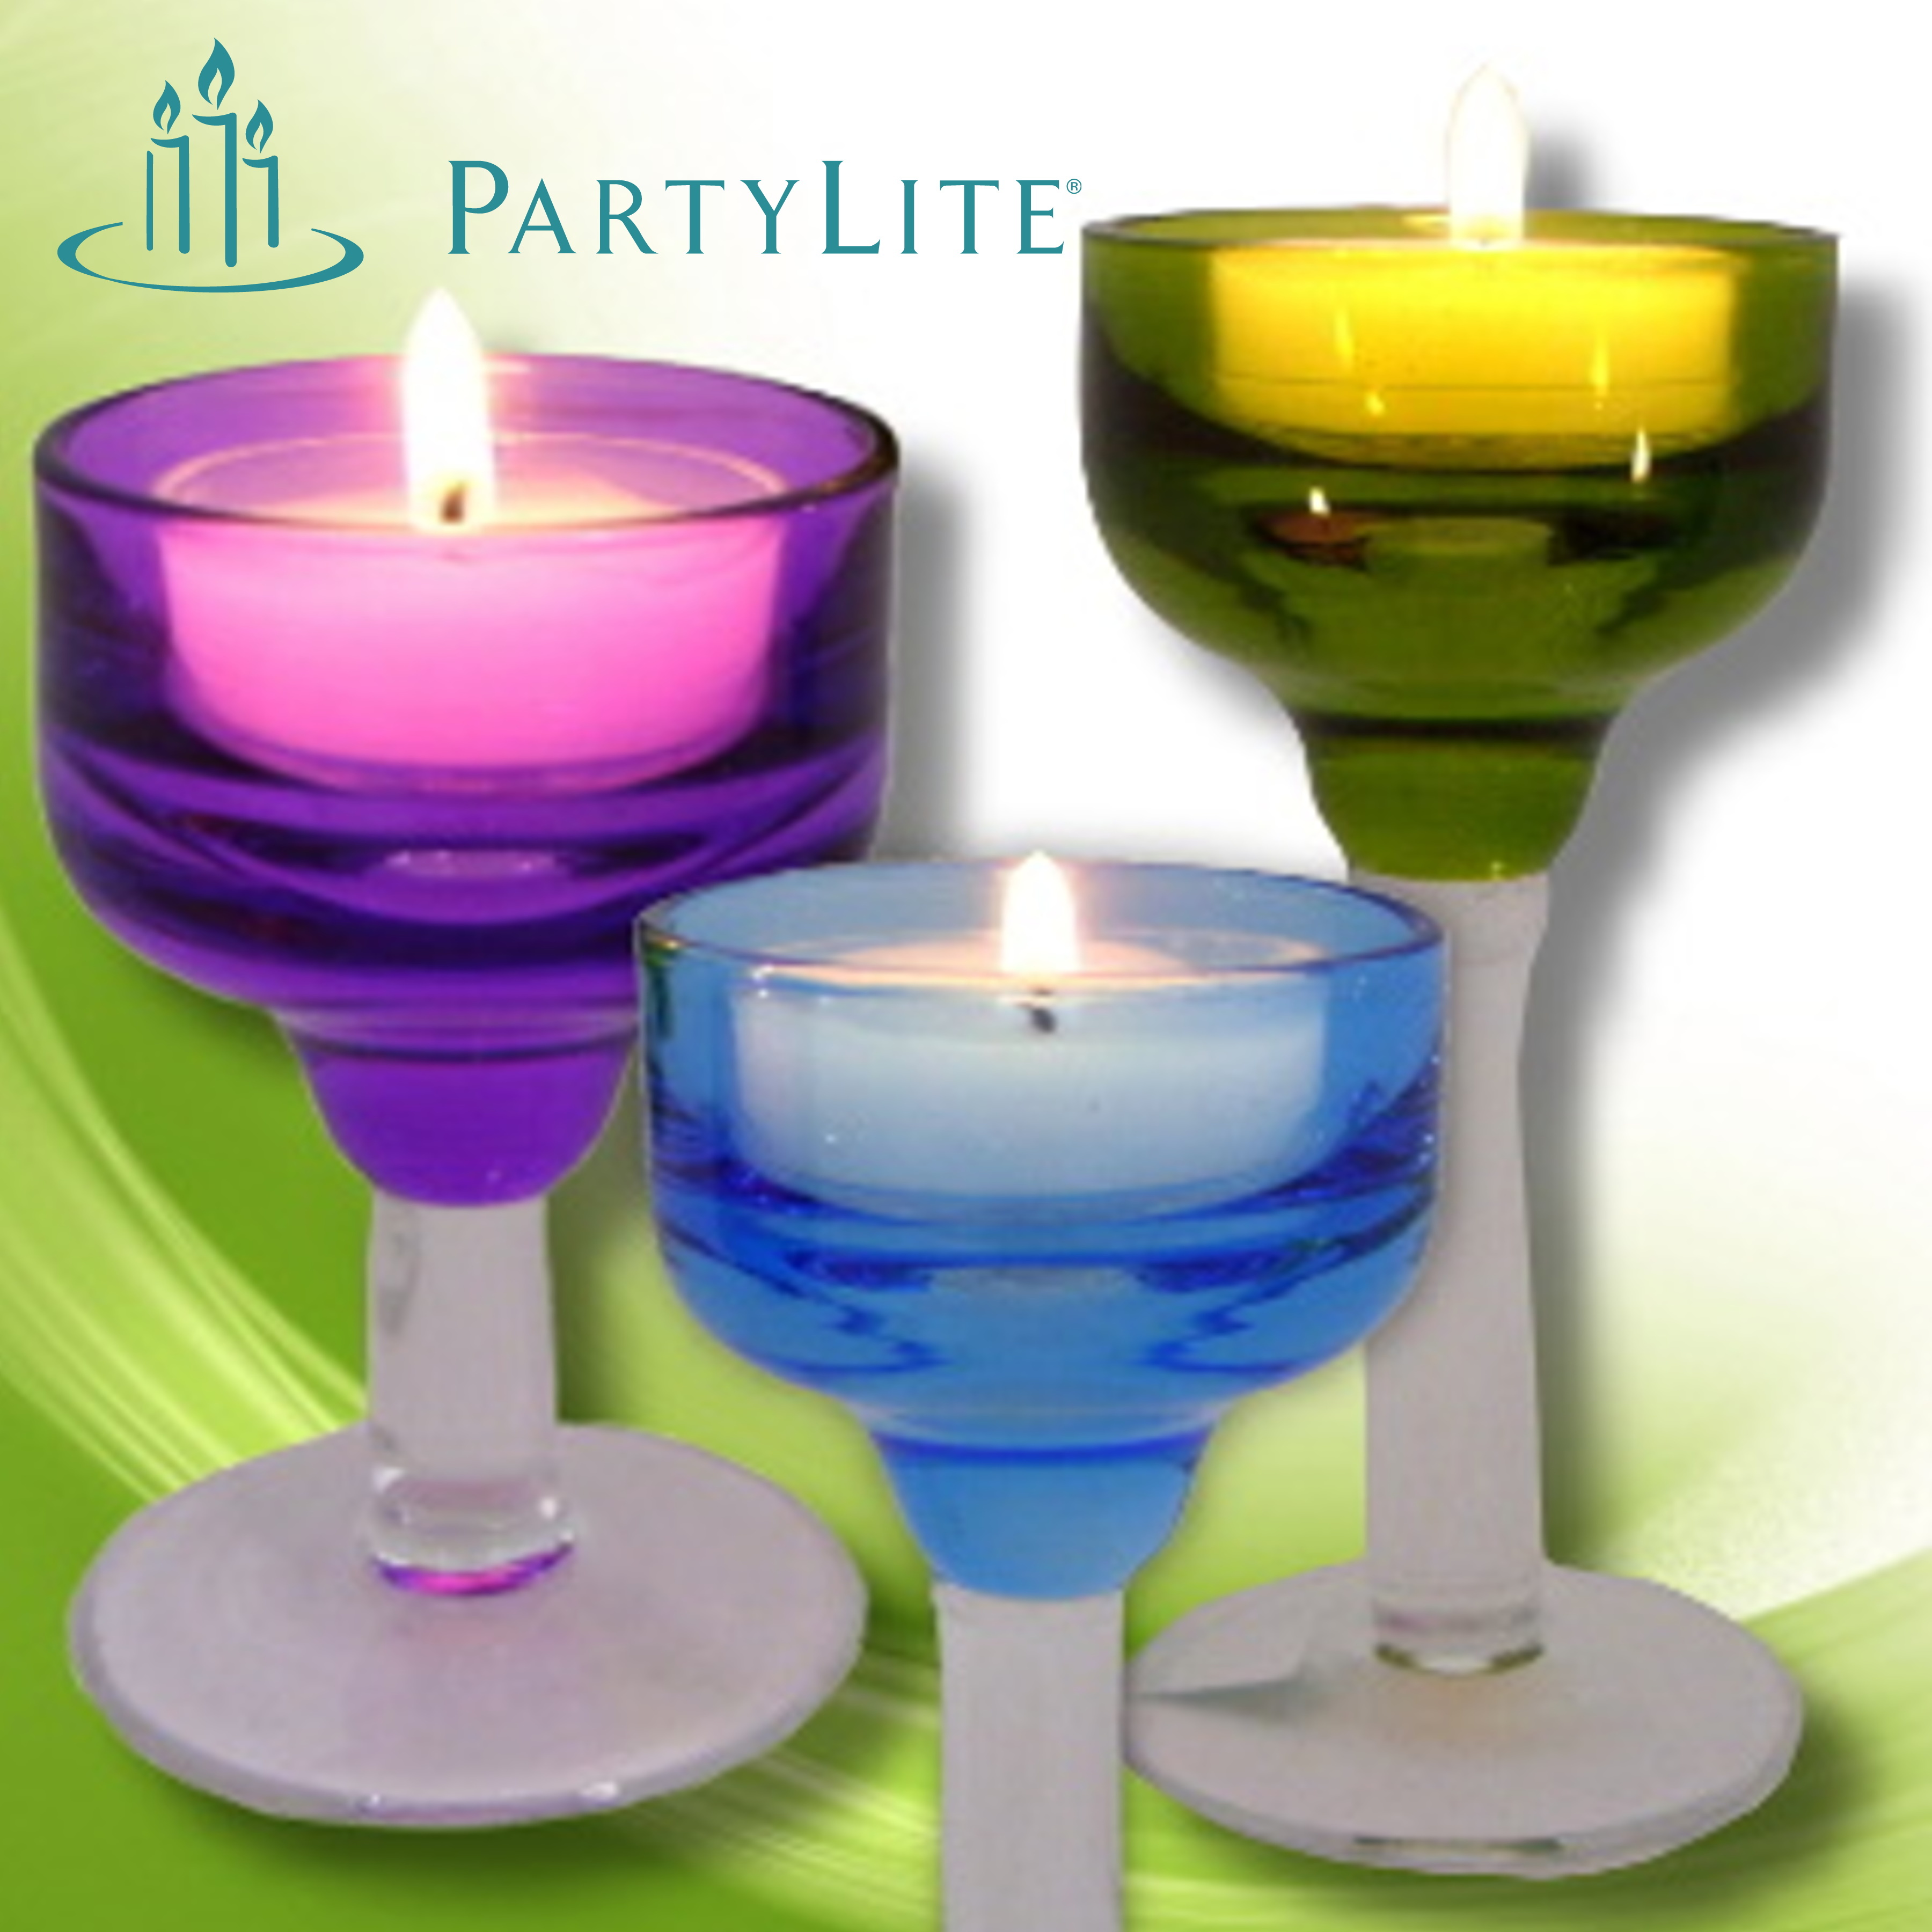 Partylite-Duft-Kerzen-Halter-Online-Shop